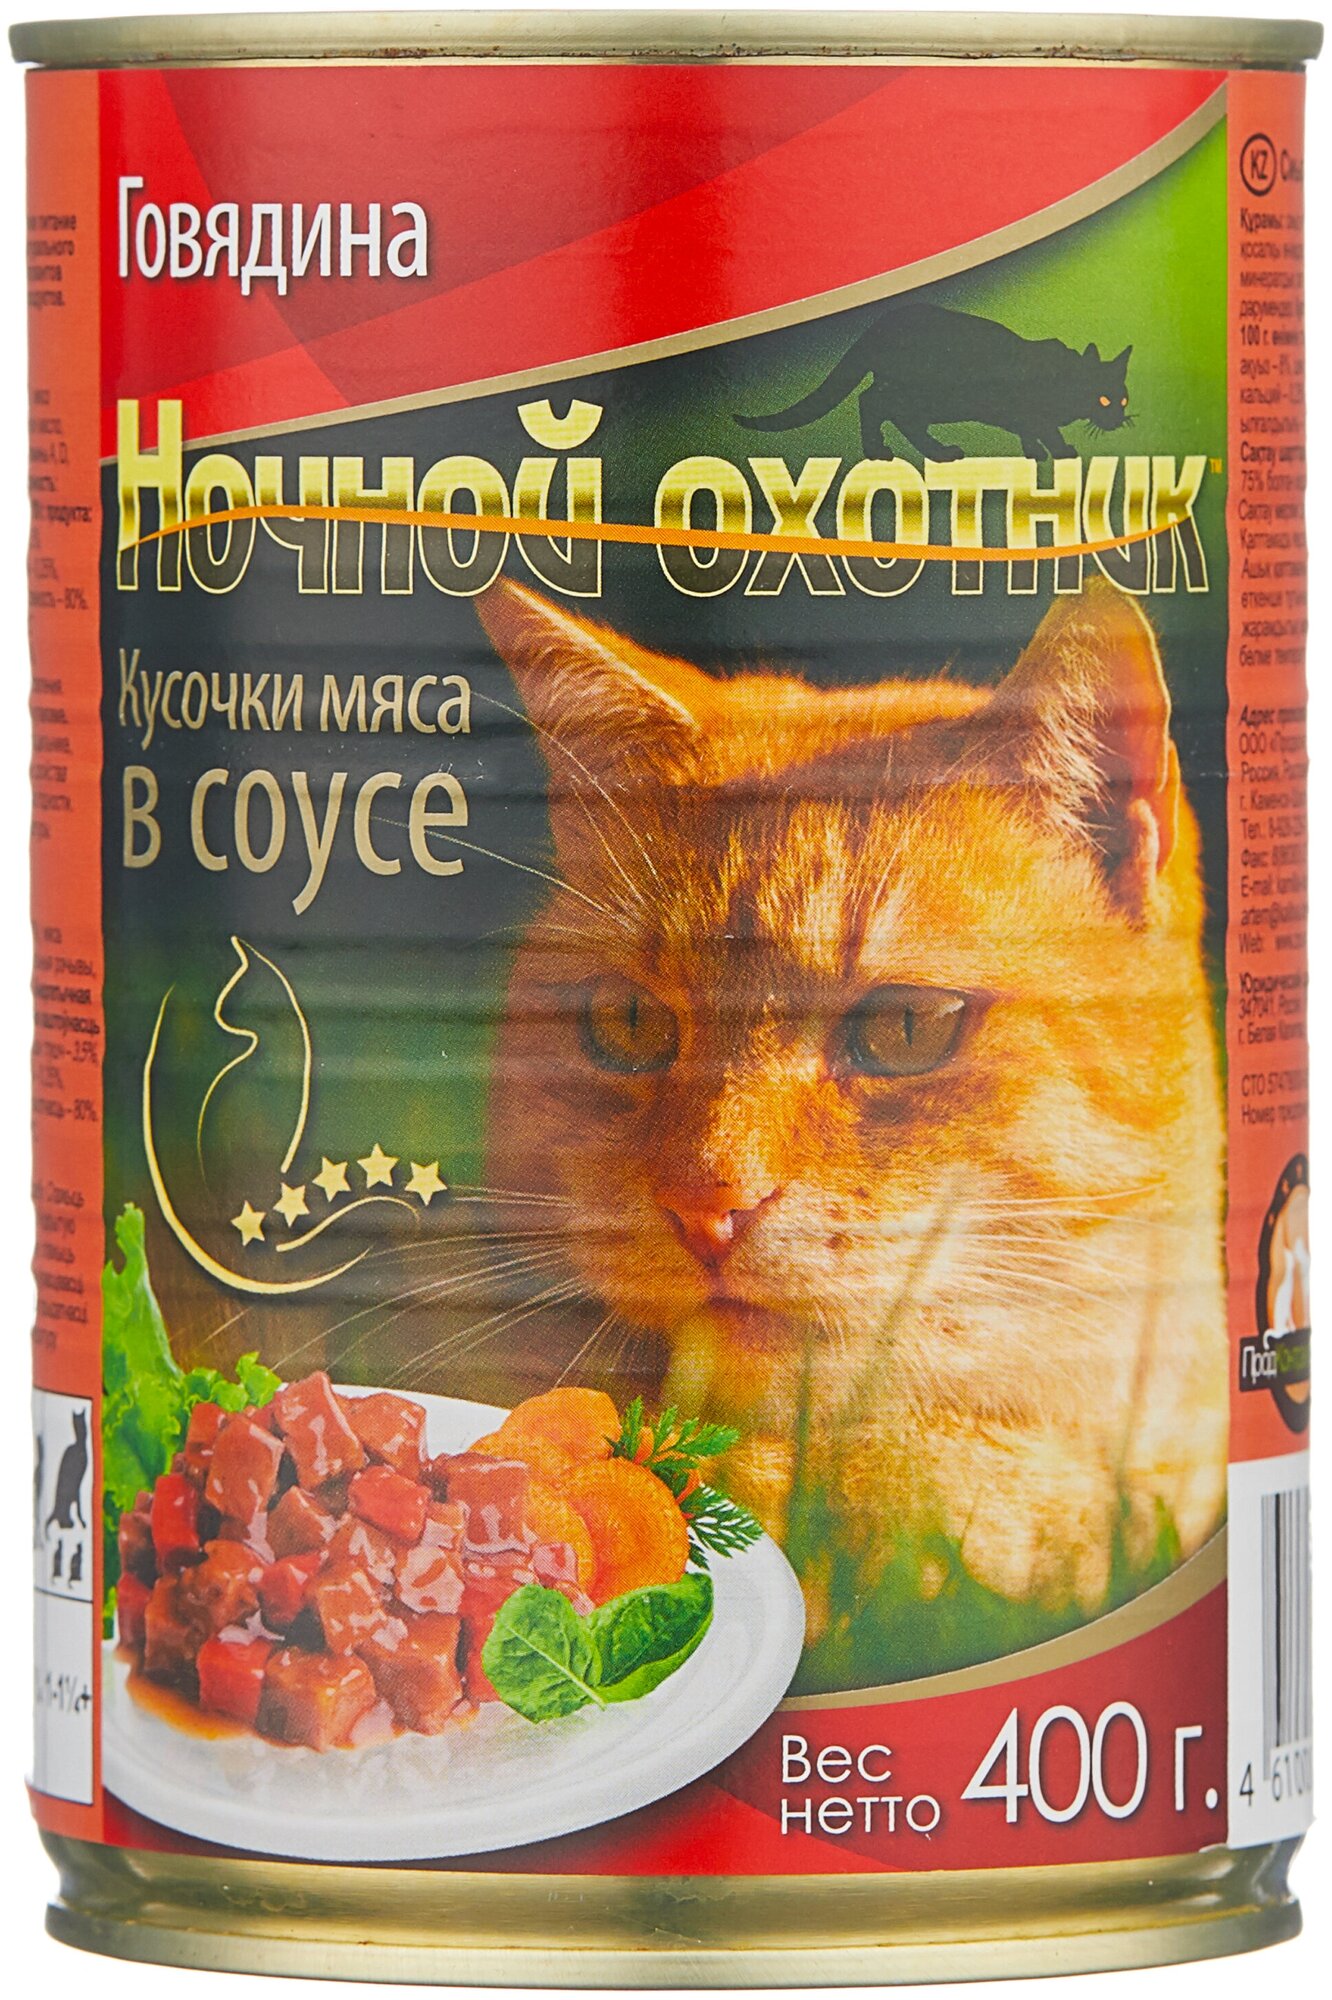 Ночной охотник консервированный корм для кошек Говядина в соусе 400г - фотография № 1